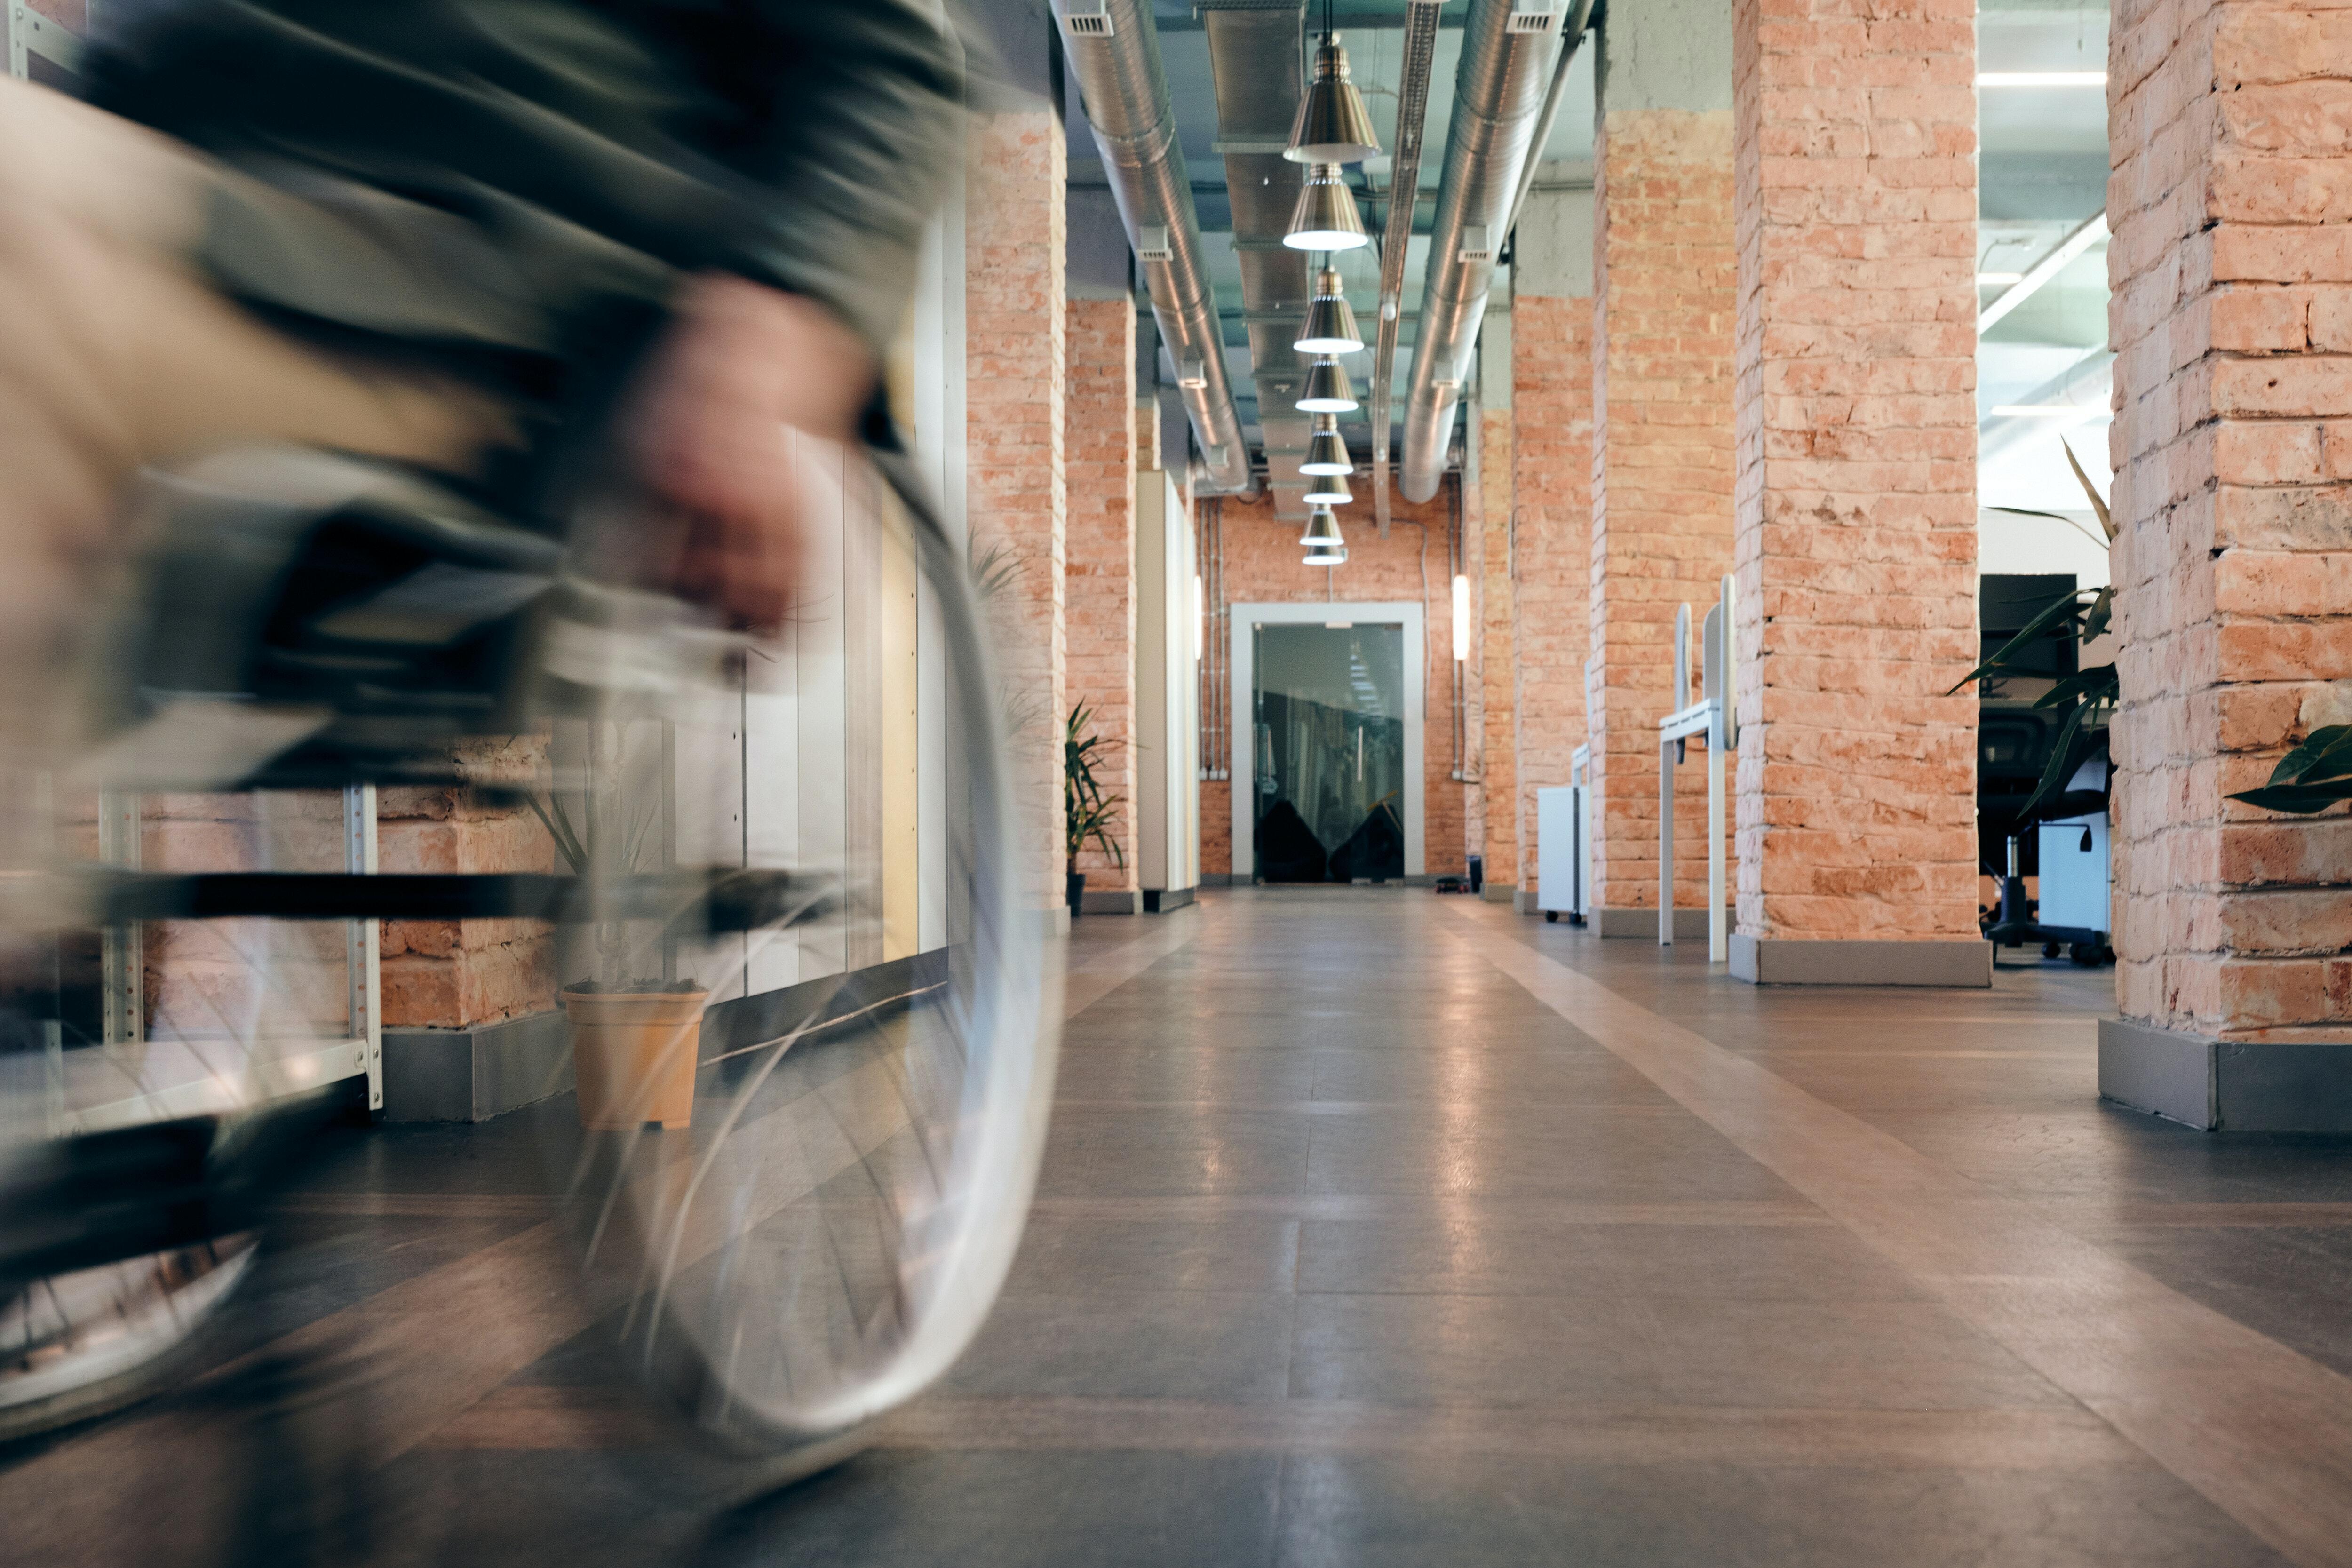 Persona utilitza una cadira de rodes en un passadís que acaba en un punt de fuga molt pronunciat per efecte de la perspectiva fotogràfica.